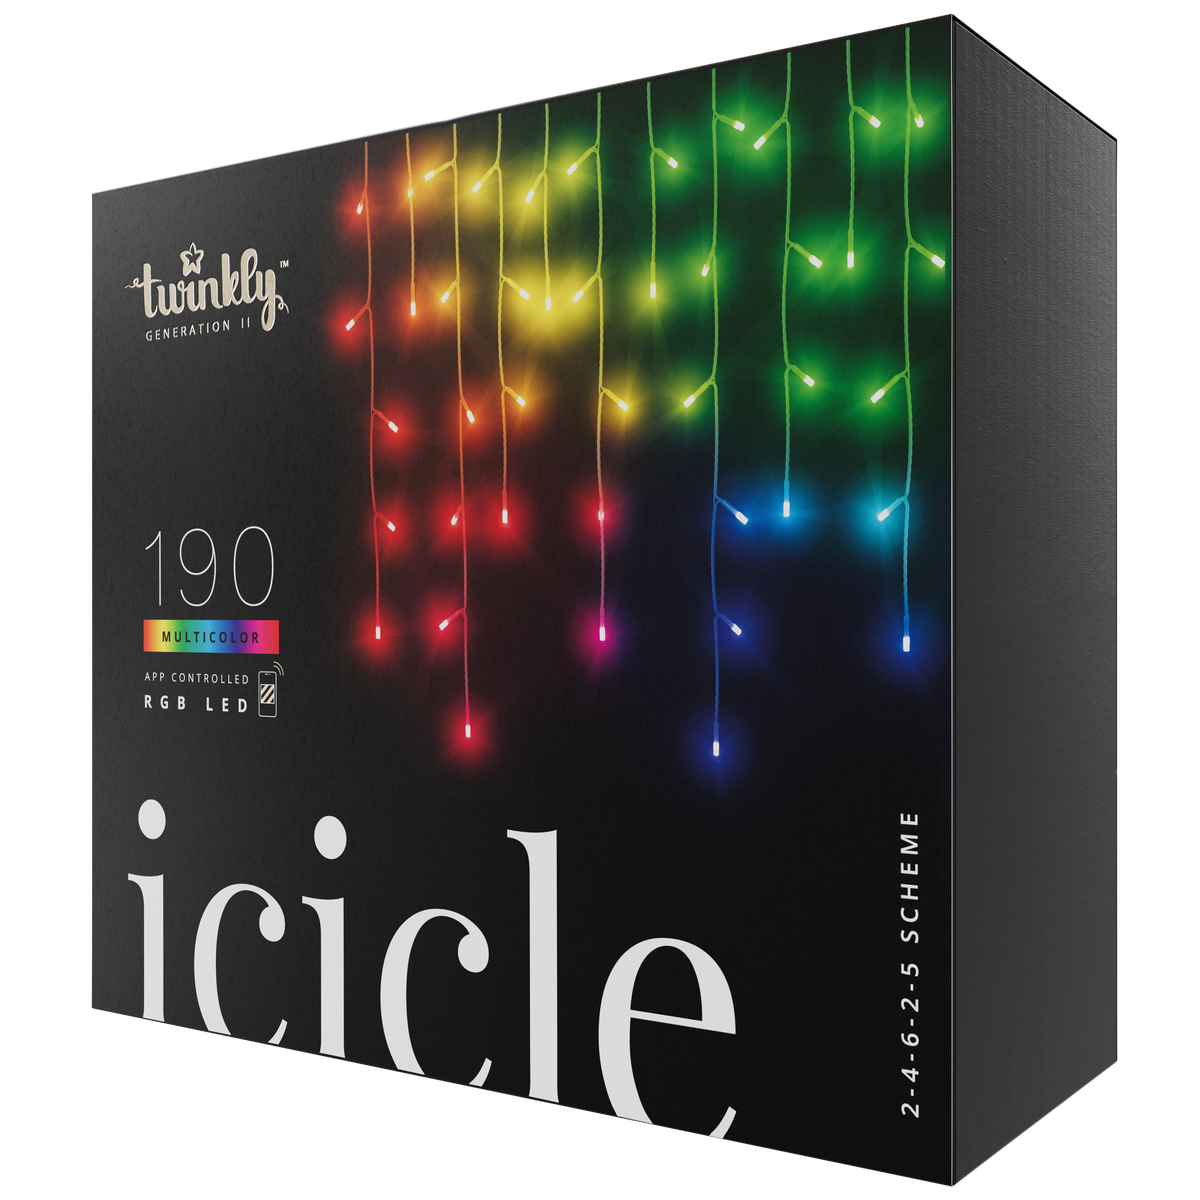 Icicle (többszínű kiadás)